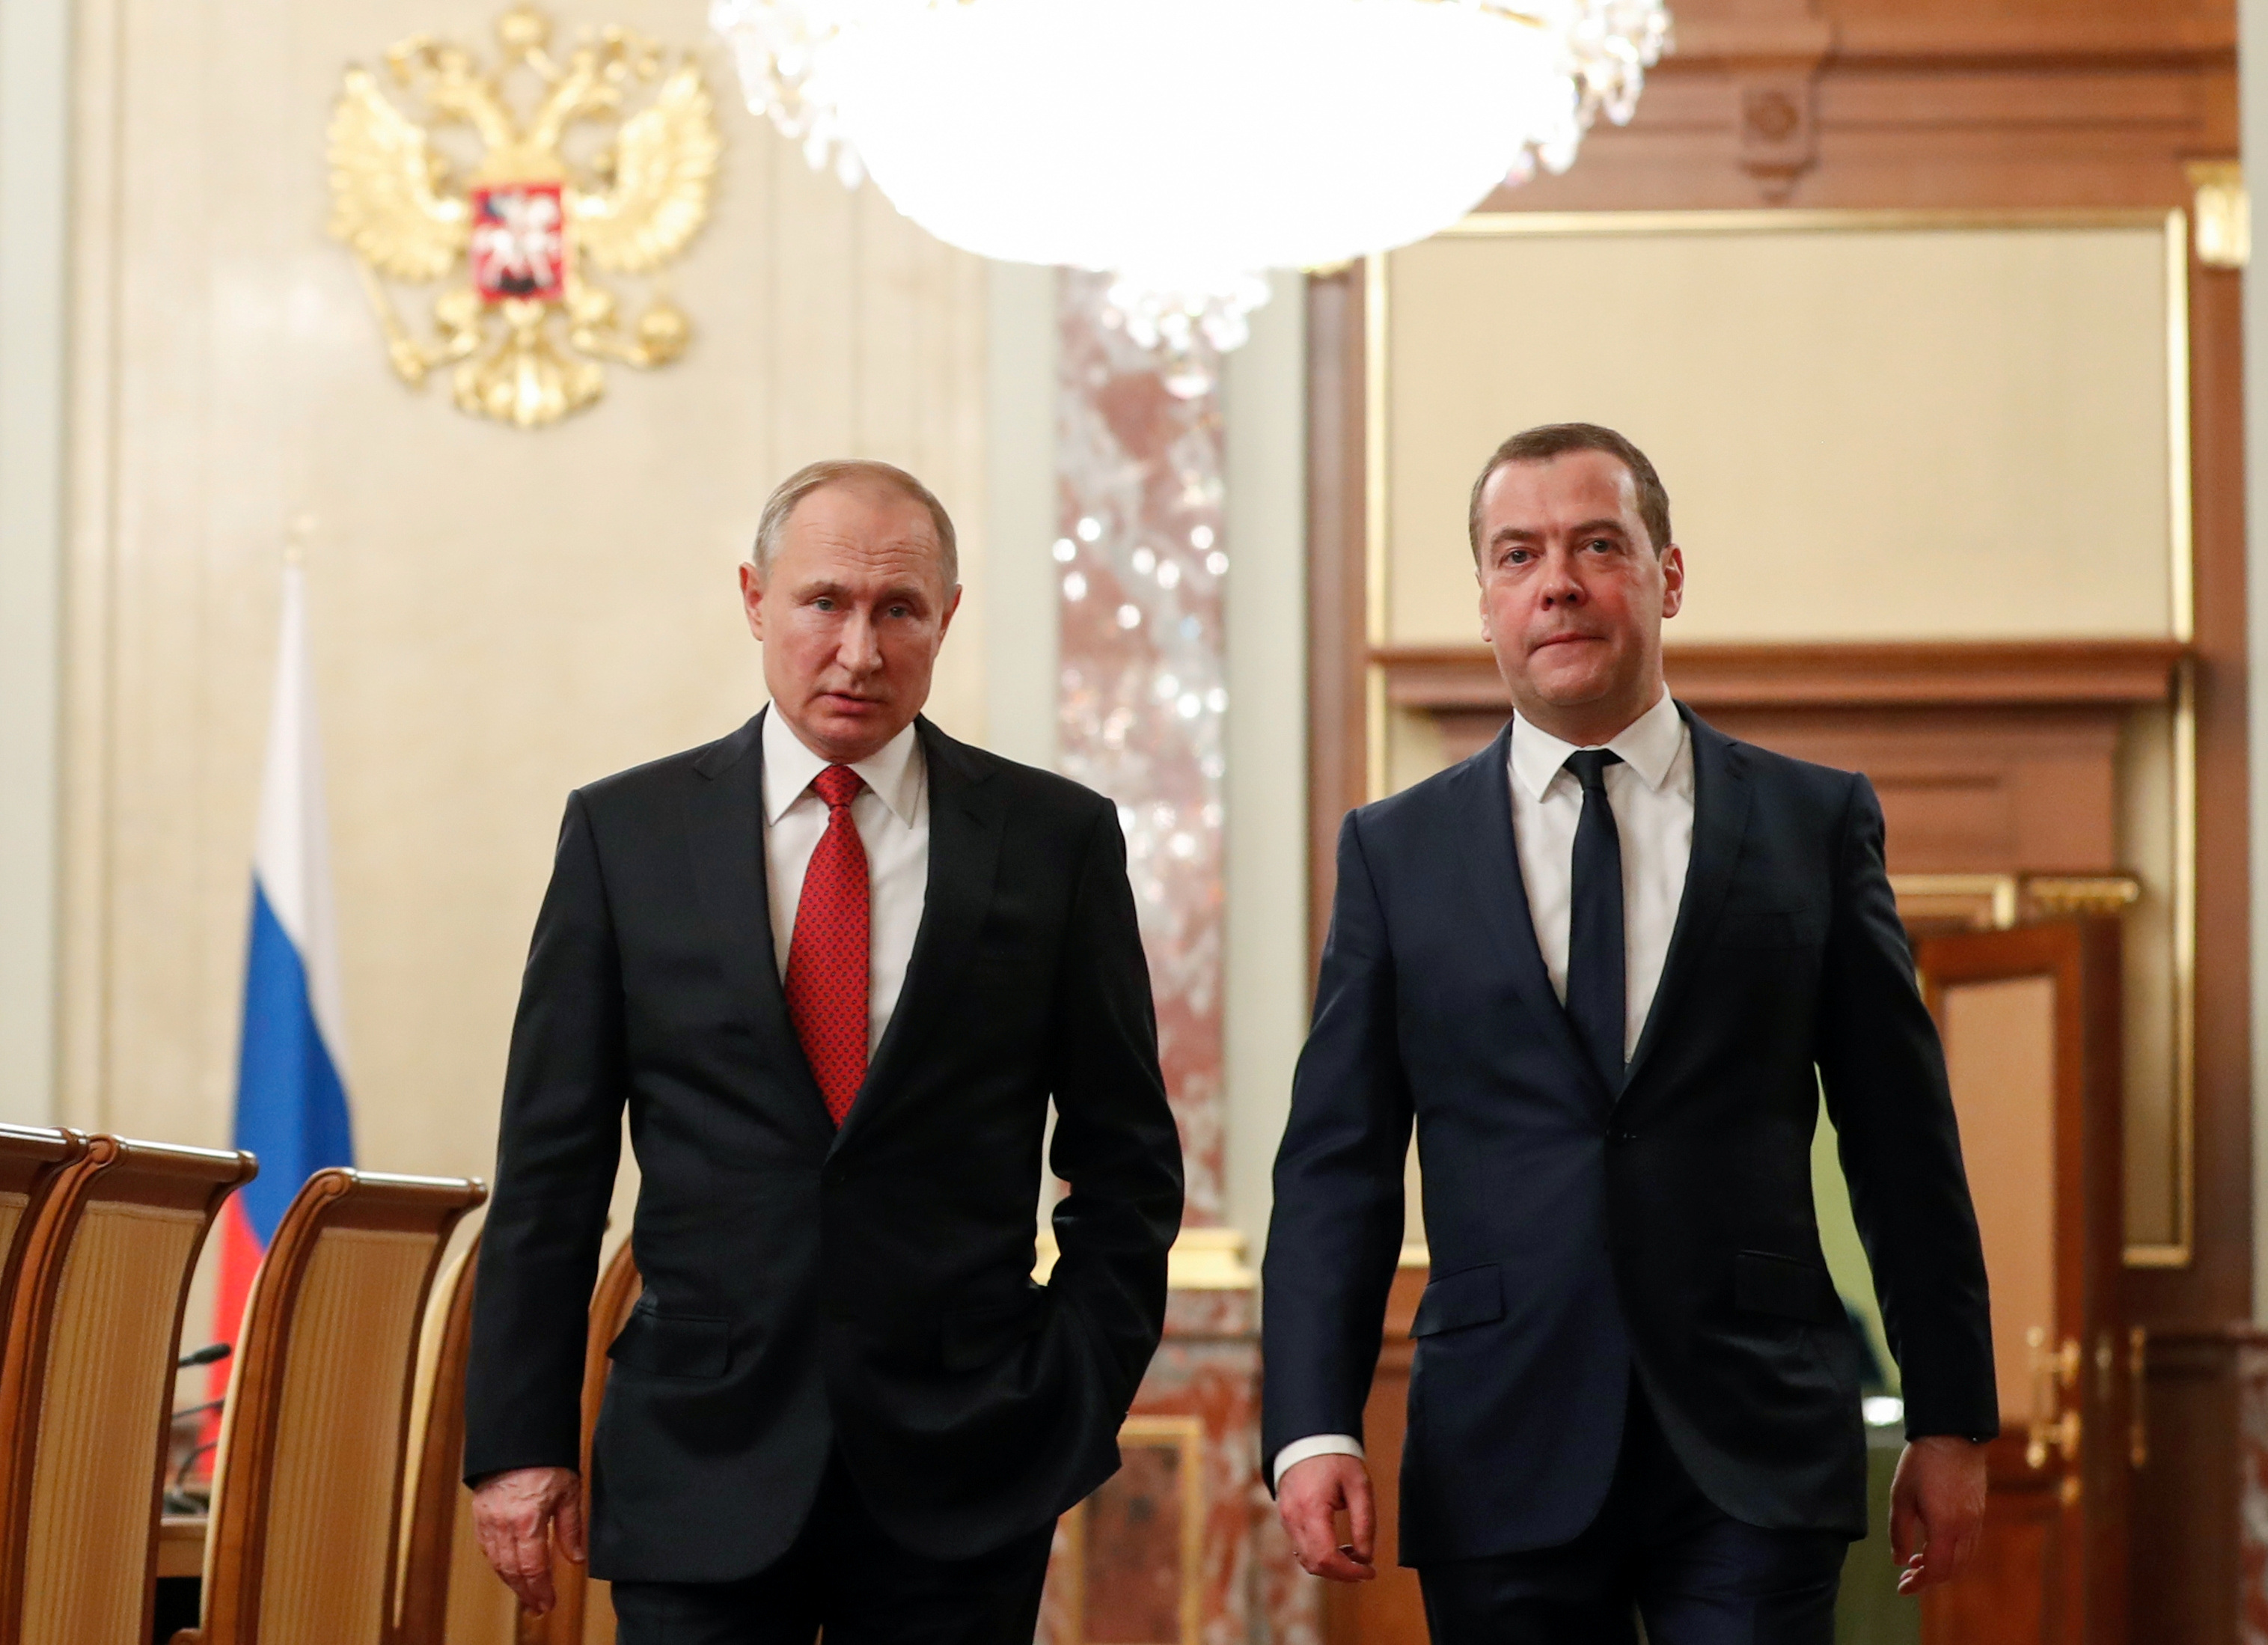 El presidente ruso Putin y el primer ministro Medvedev hablan antes de una reunión con miembros del gobierno en Moscú.